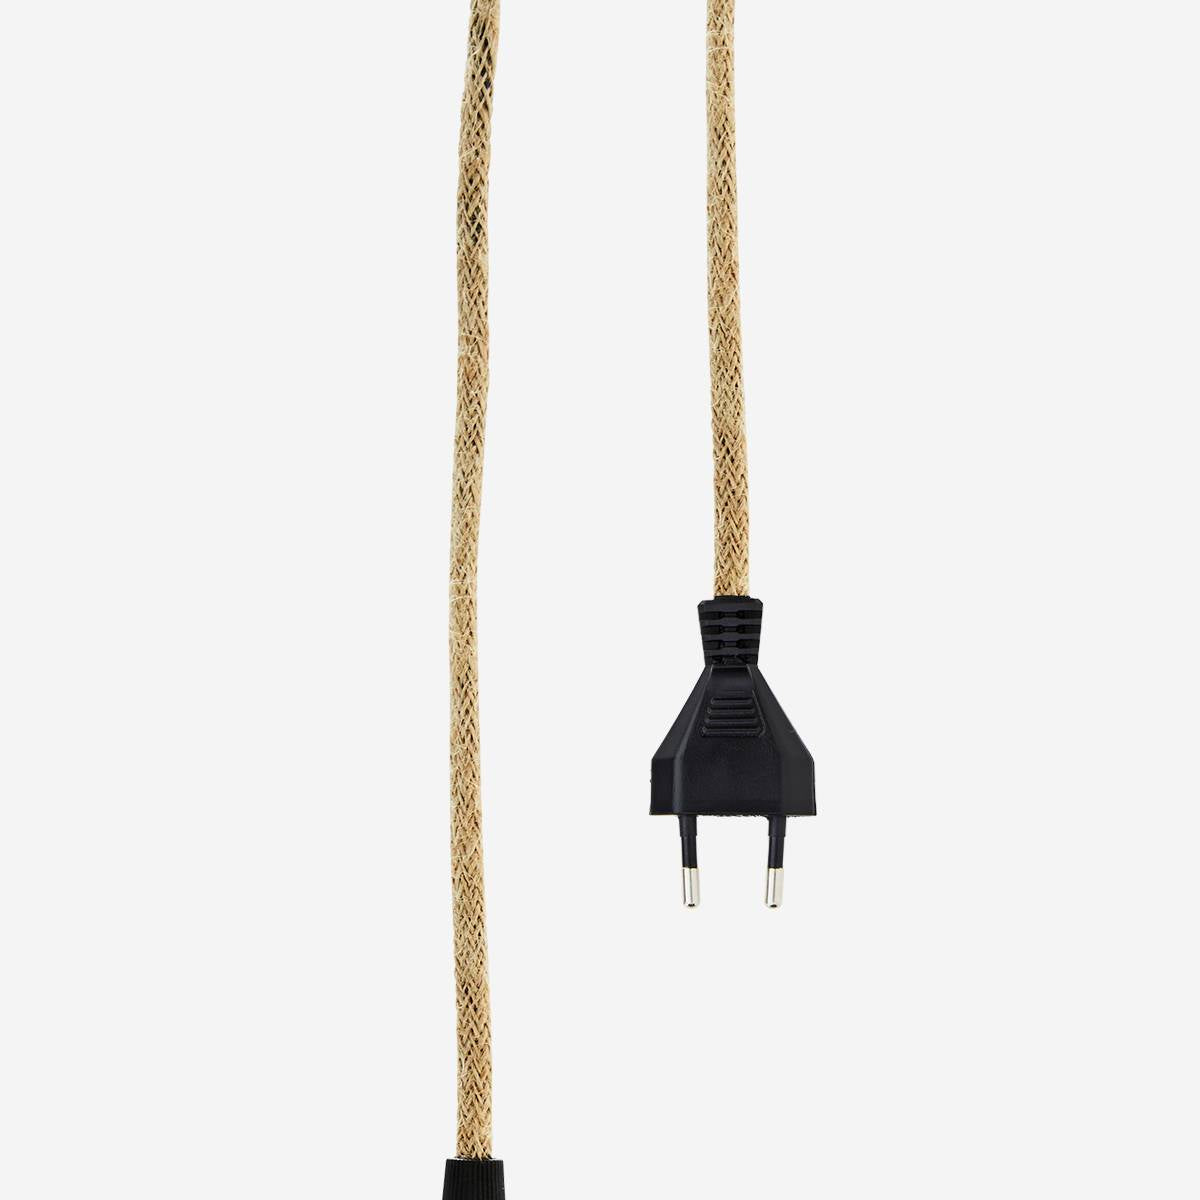 Cable électrique douille laiton - cable corde naturel - prise